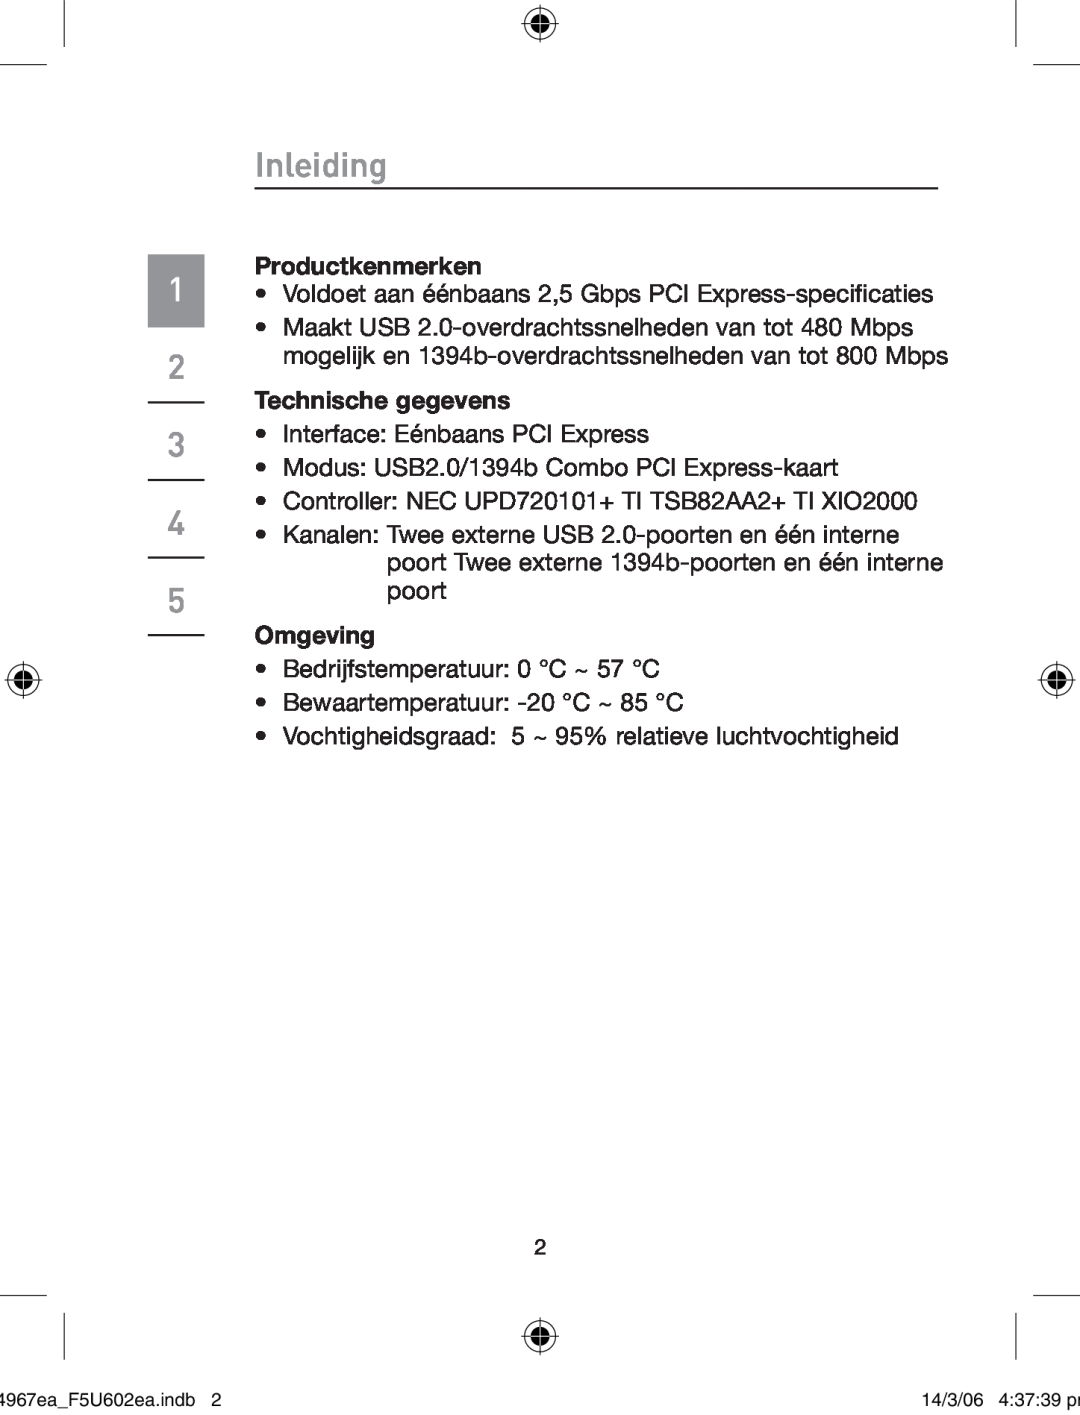 Belkin F5U602EA user manual Inleiding, Productkenmerken, Technische gegevens, Omgeving 